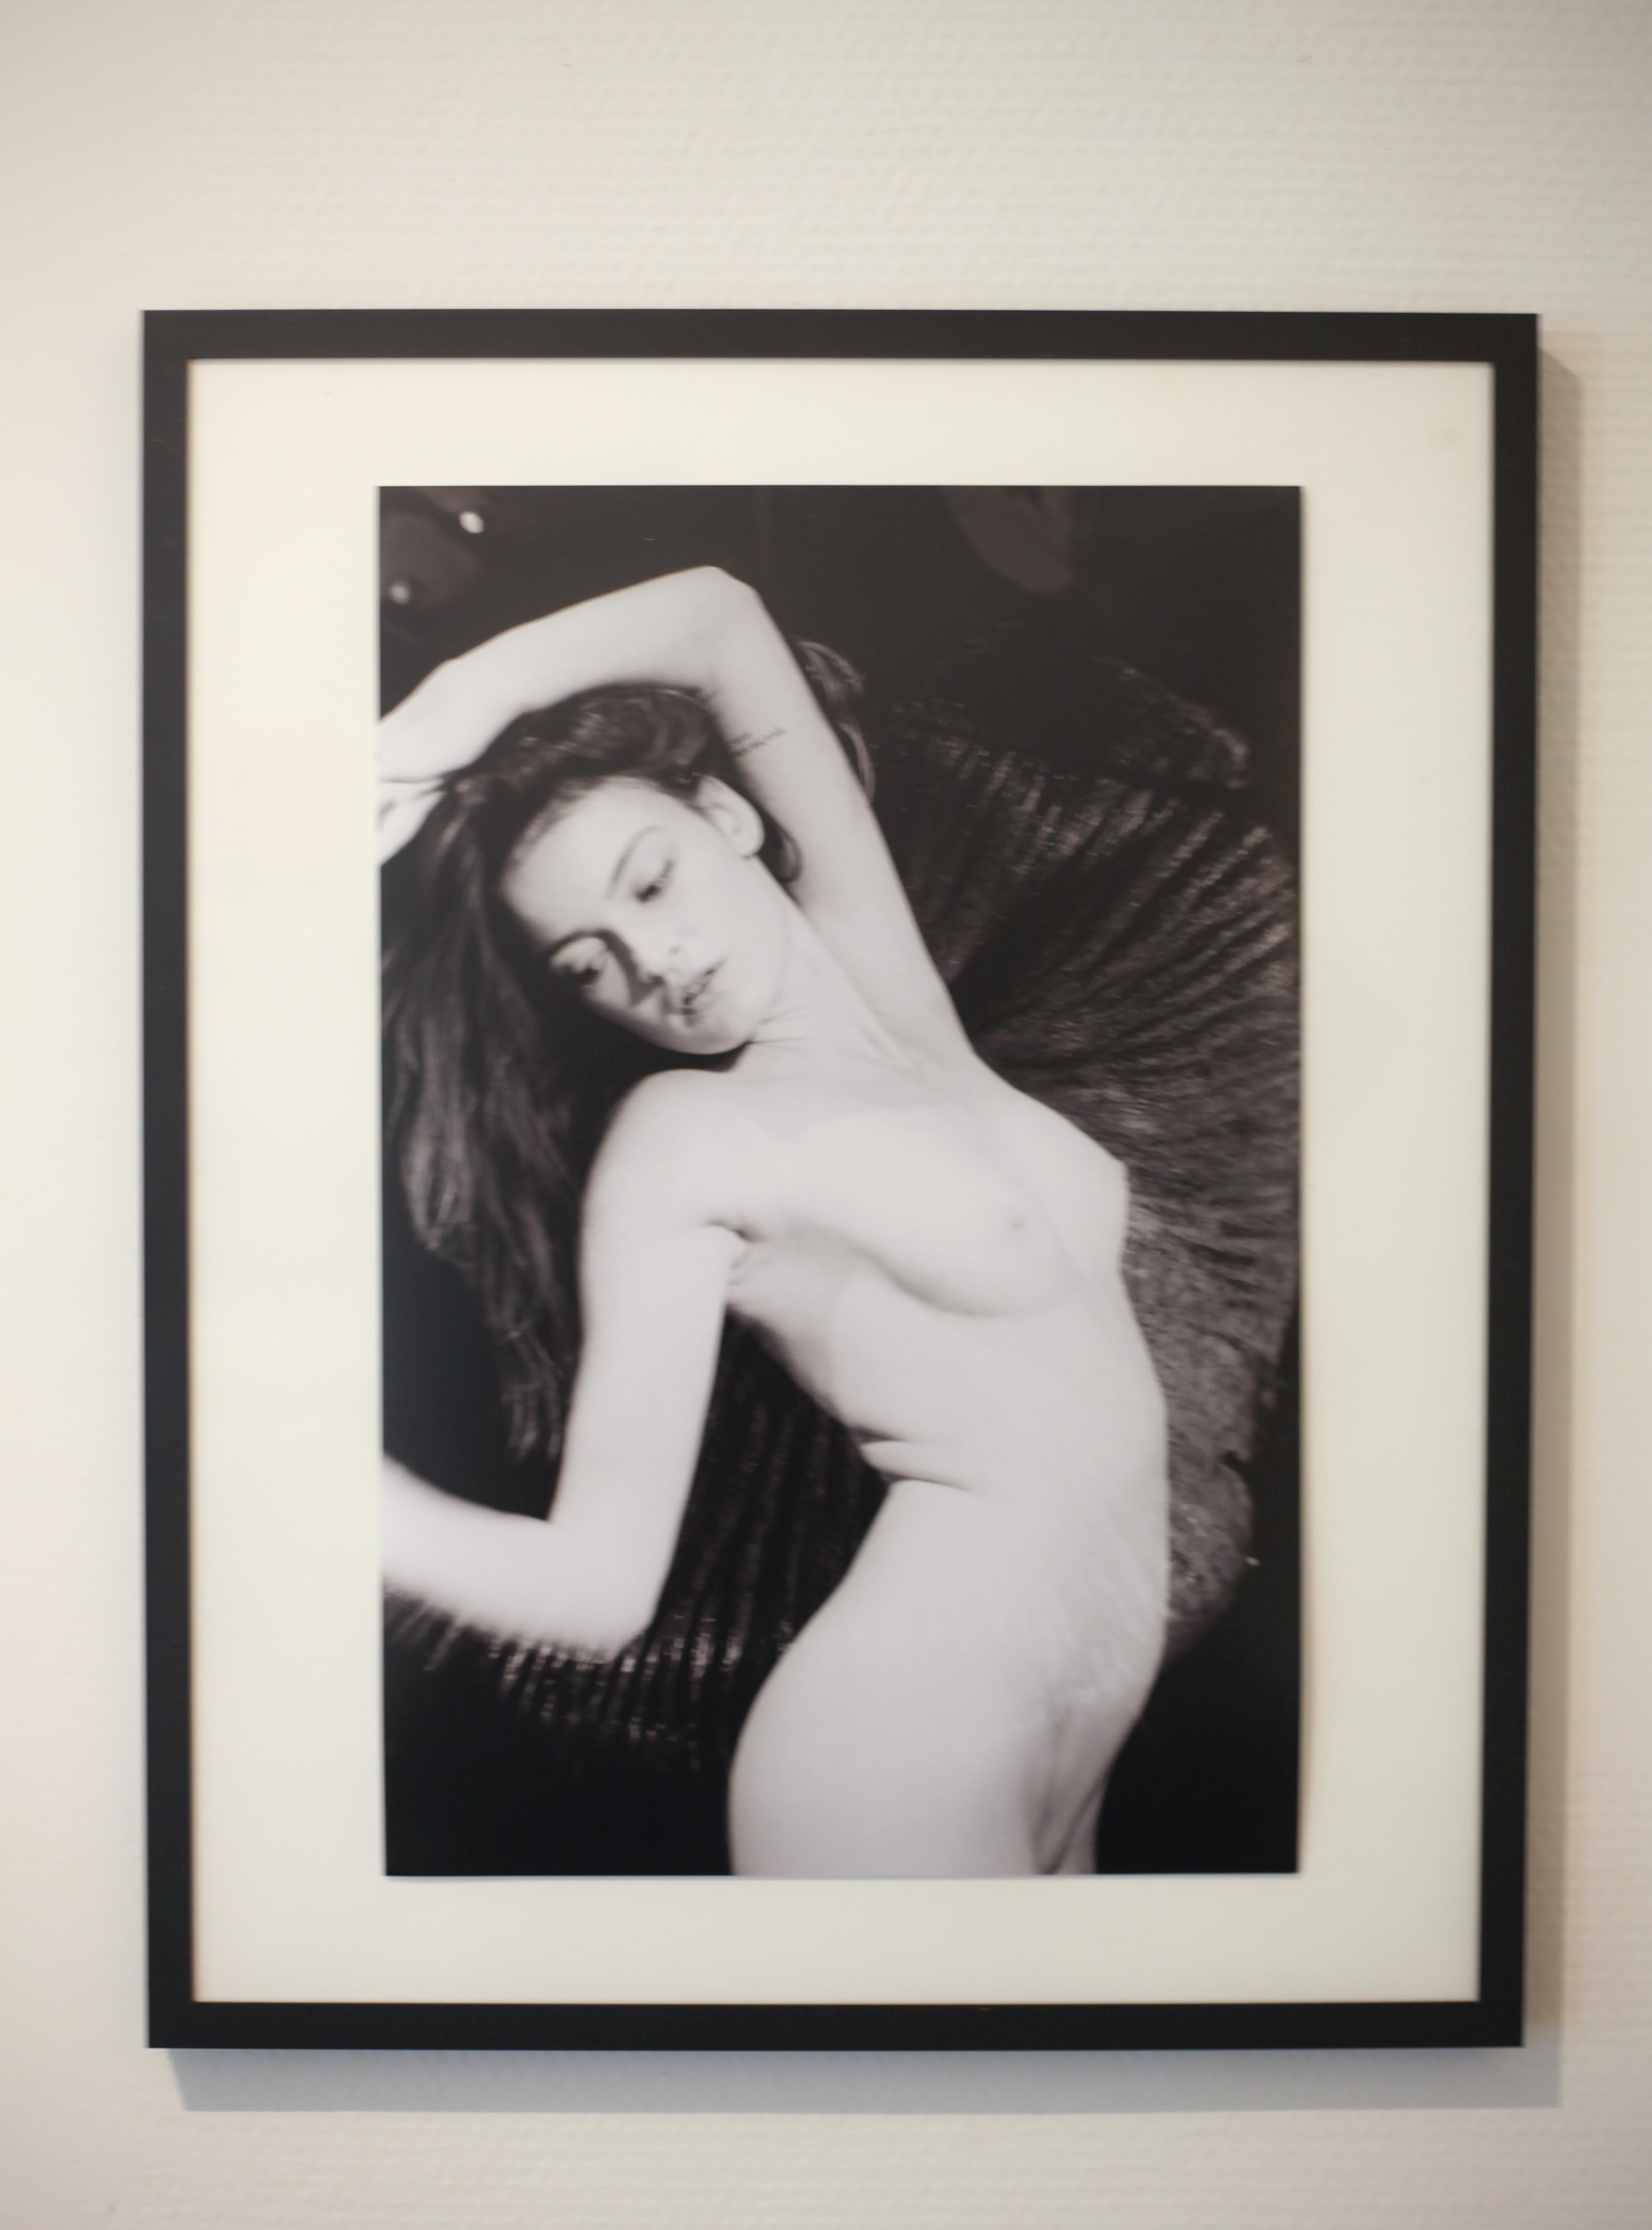  Medhy Bichon - Mouvements Naturels 15 (Beige), Nude Print, von Meïdhy Bichon